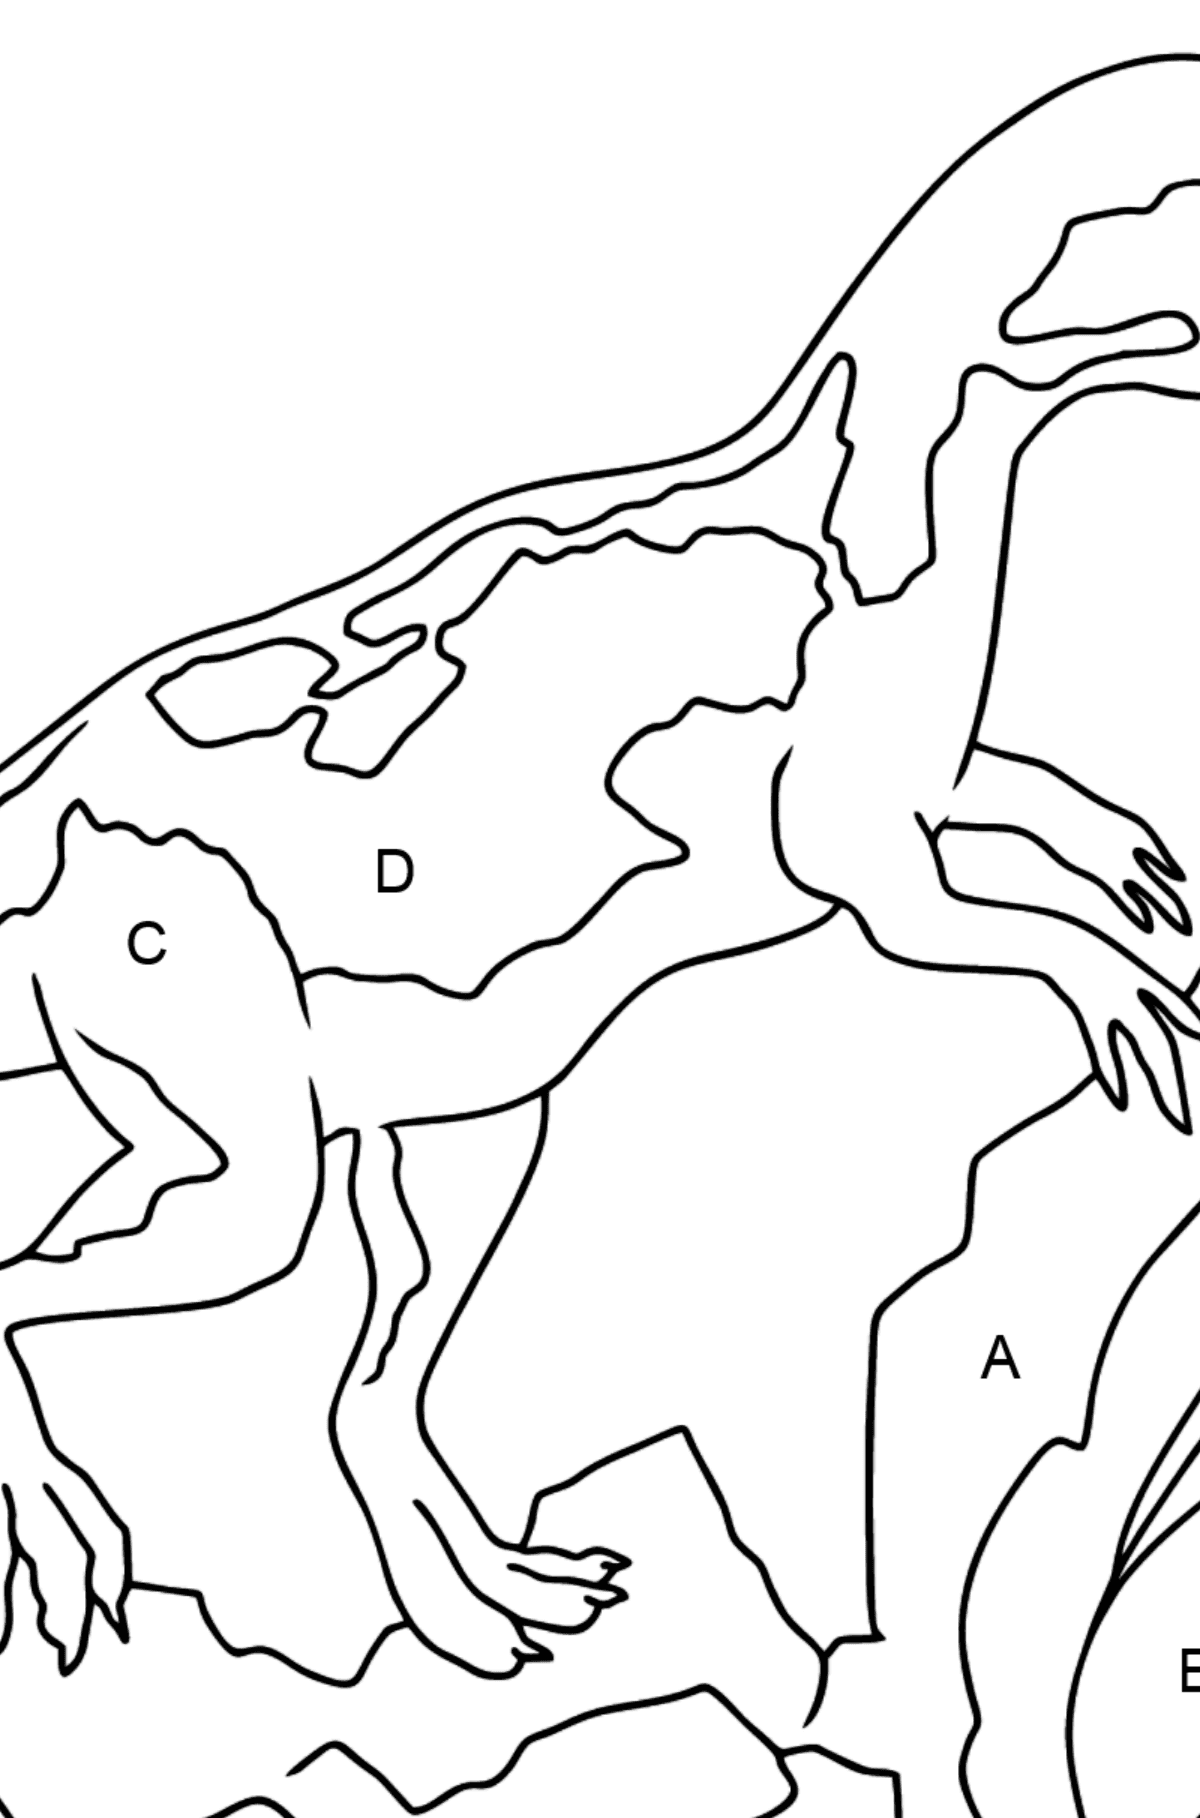 Desenho para colorir de dinossauro jurássico (fácil) - Colorir por Letras para Crianças